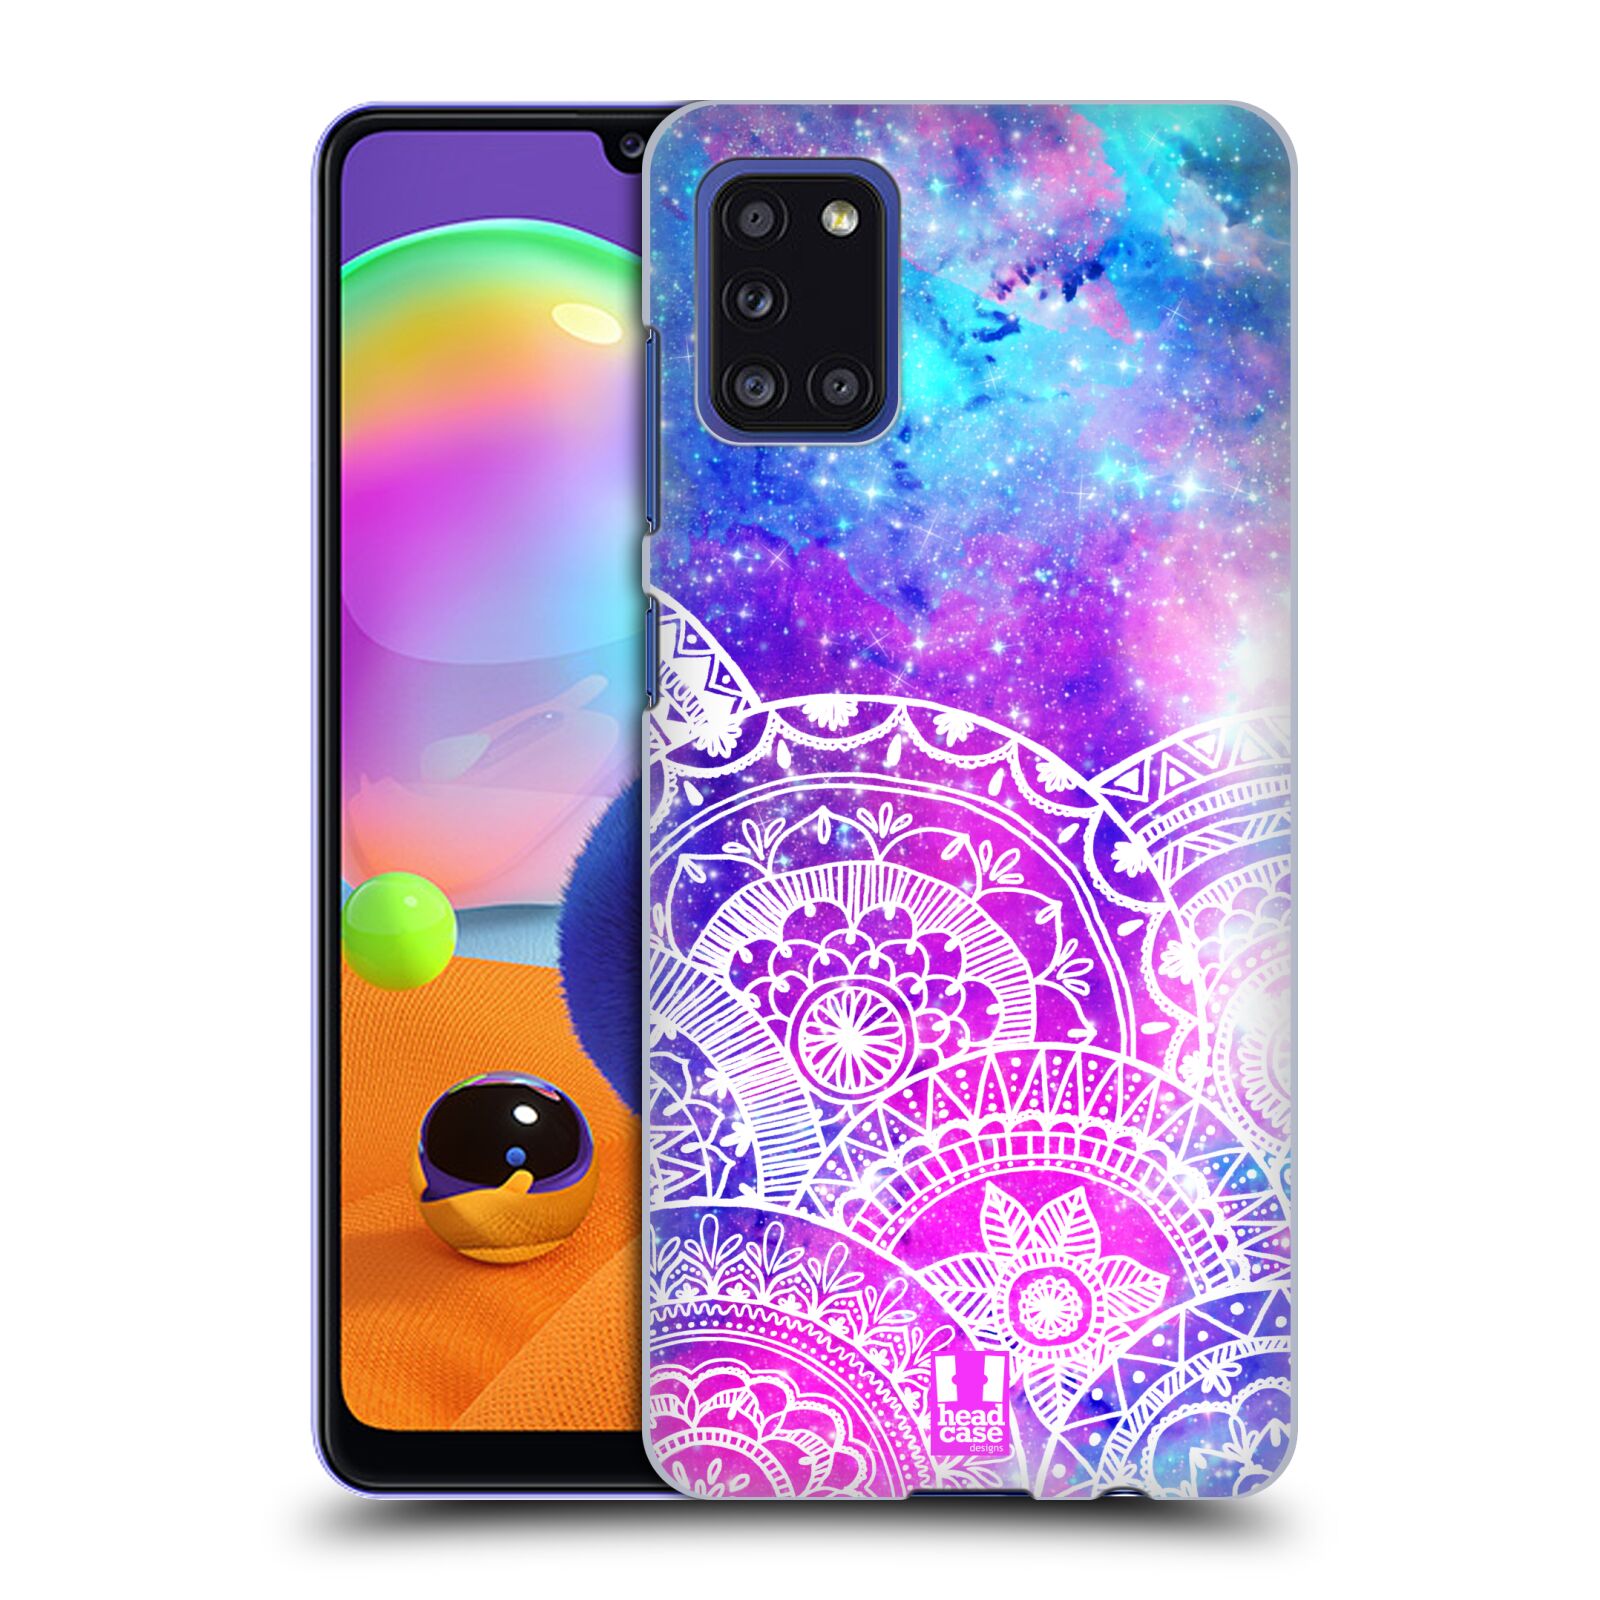 Pouzdro na mobil Samsung Galaxy A31 - HEAD CASE - Mandala nekonečná galaxie